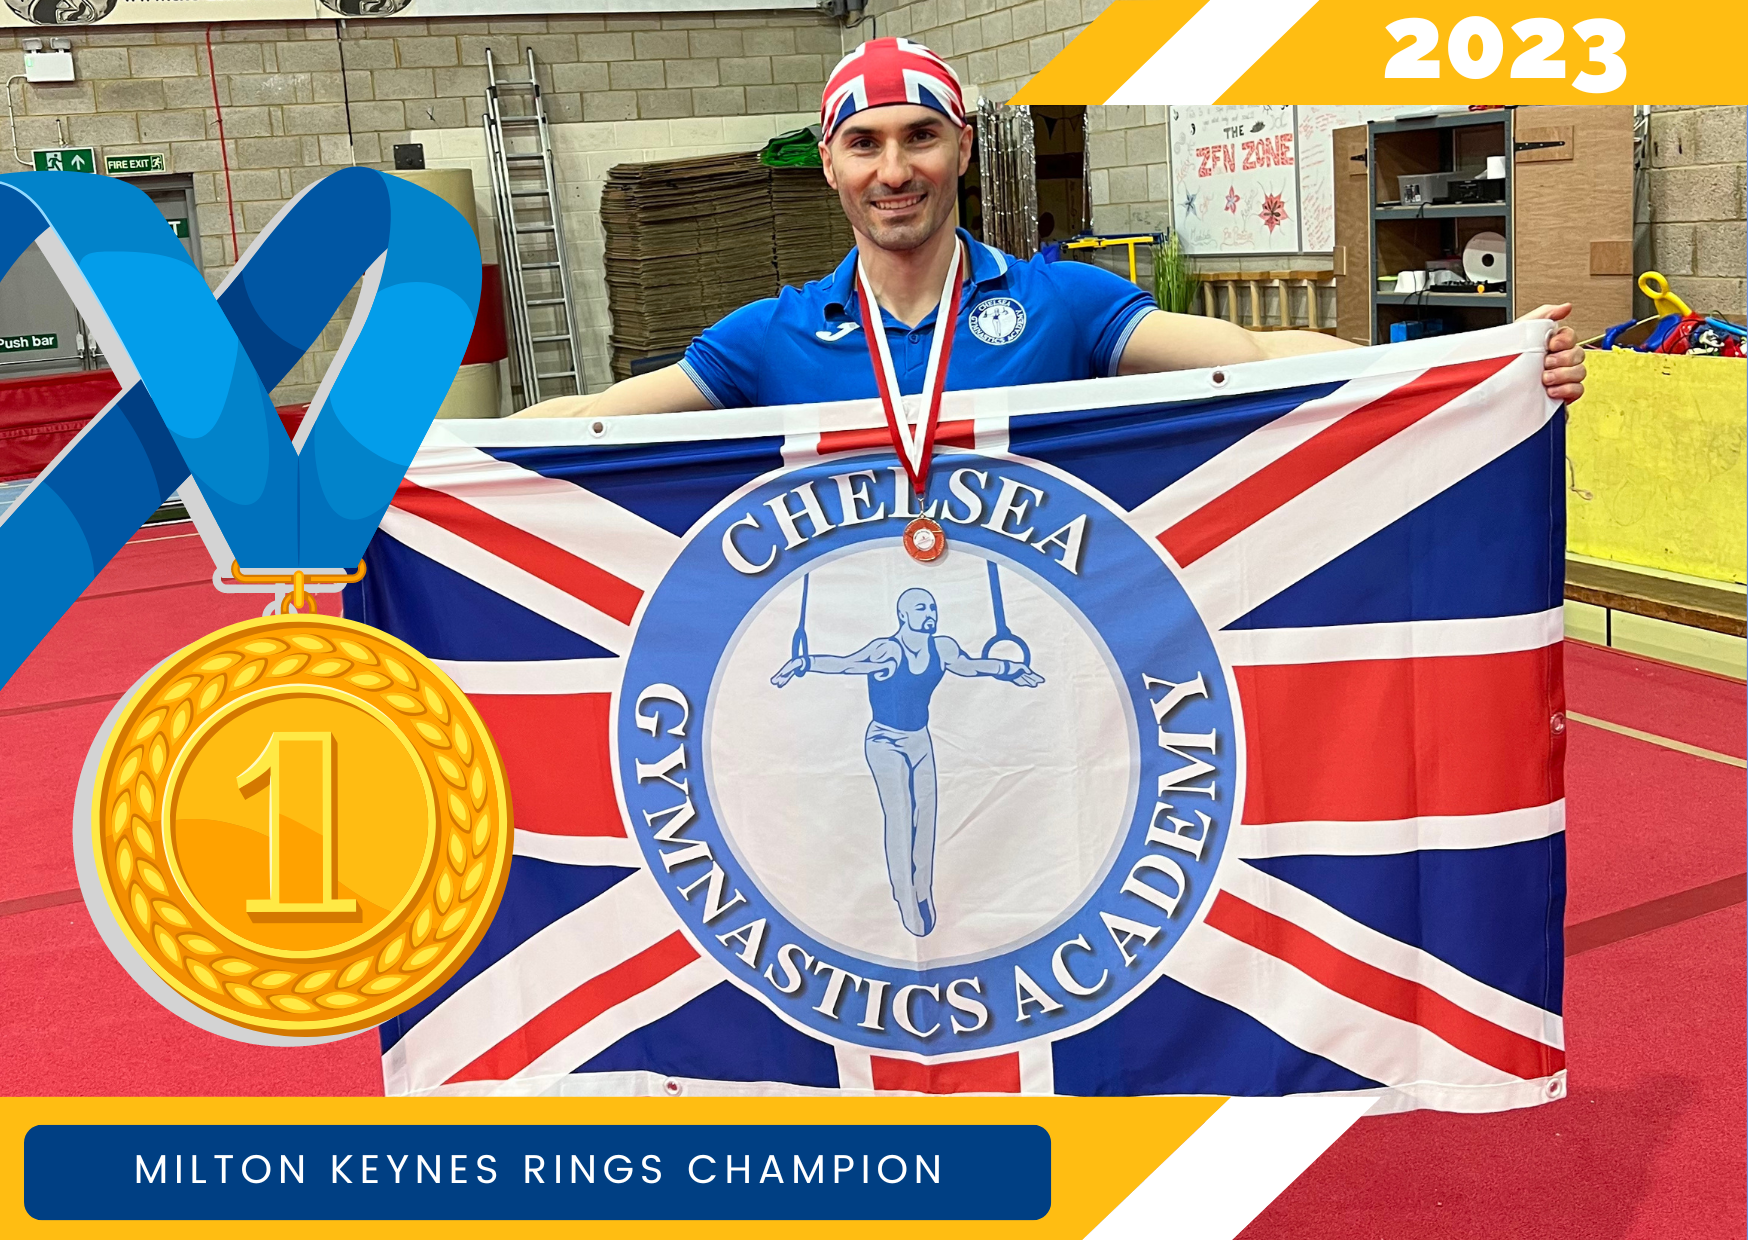 Stefan Kolimechkov is the Milton Keynes Rings Champion